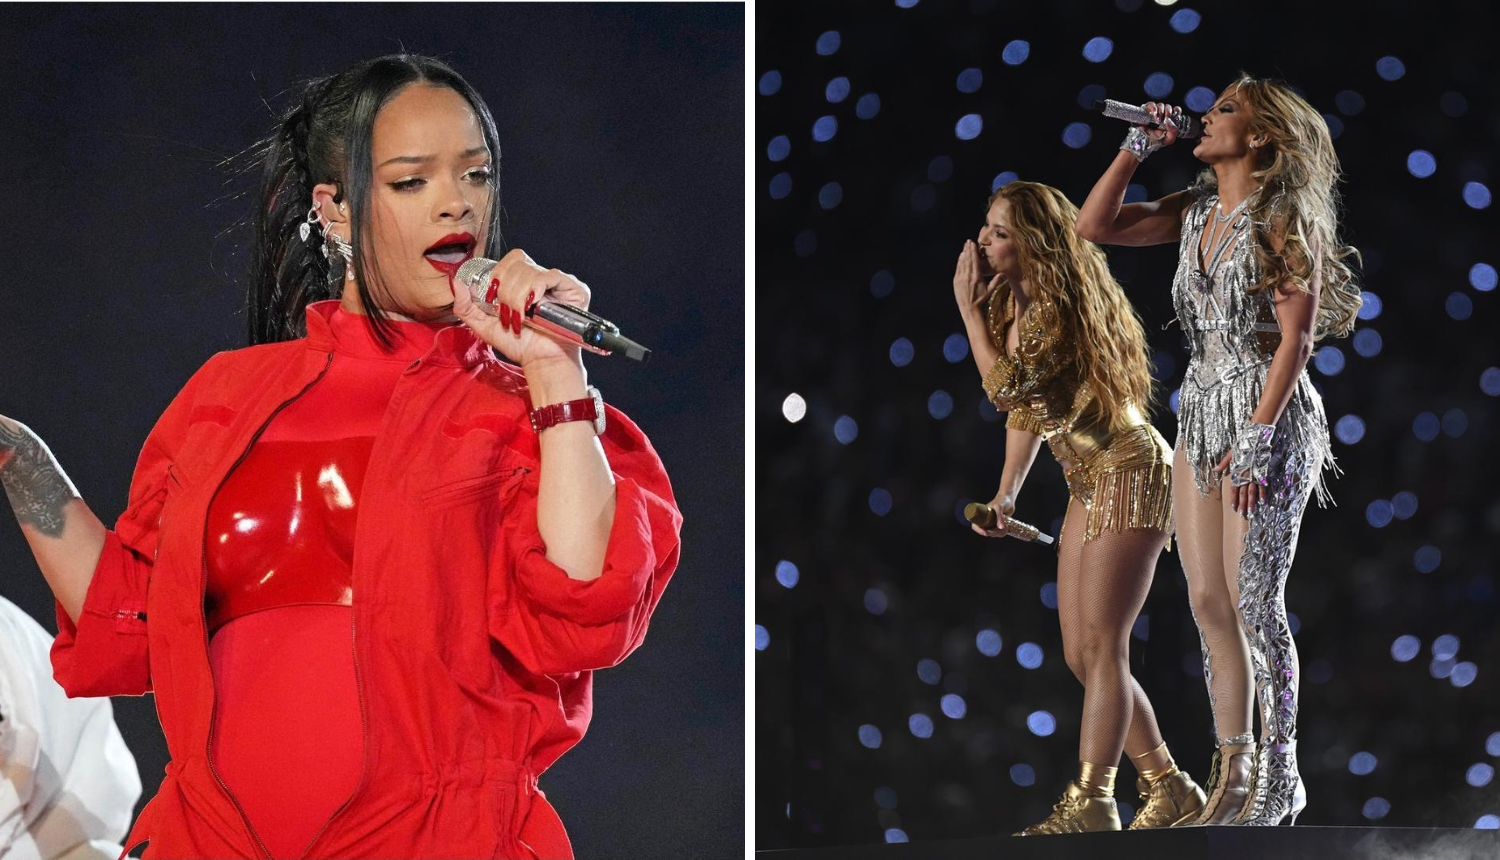 ANKETA J. Lo i Shakira plesale oko šipke, RiRi otkrila trudnoću. Koji vam je nastup bio najbolji?